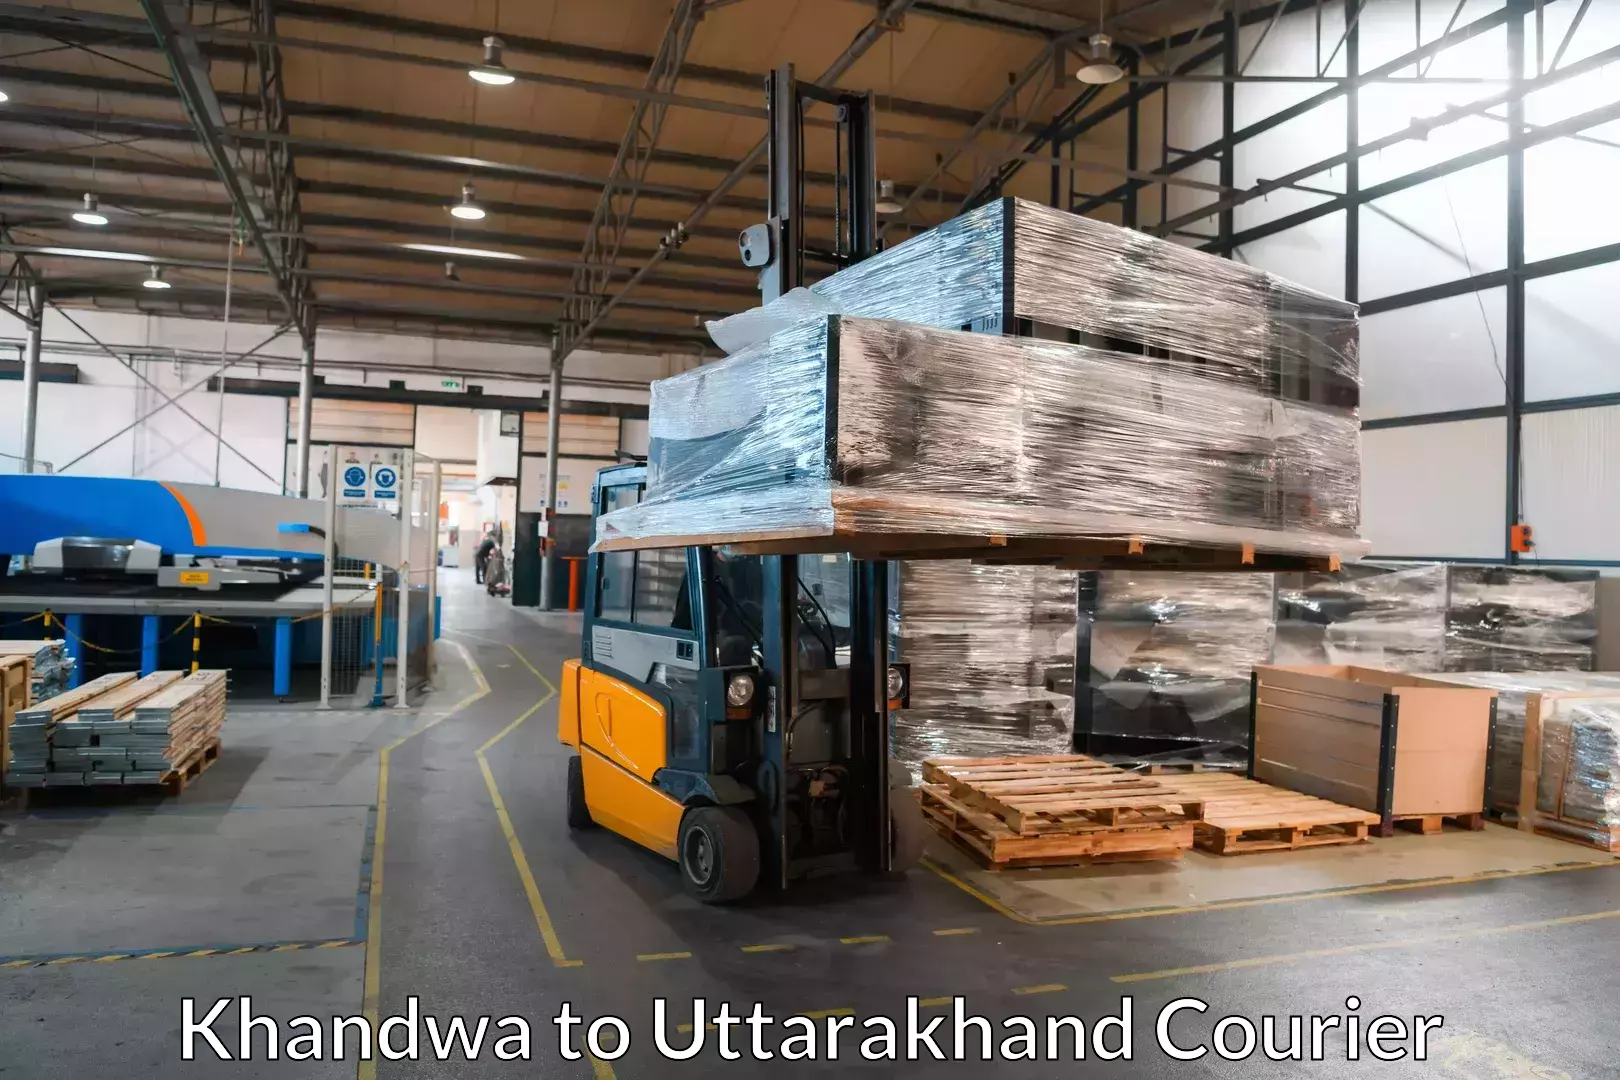 Specialized moving company Khandwa to Uttarakhand